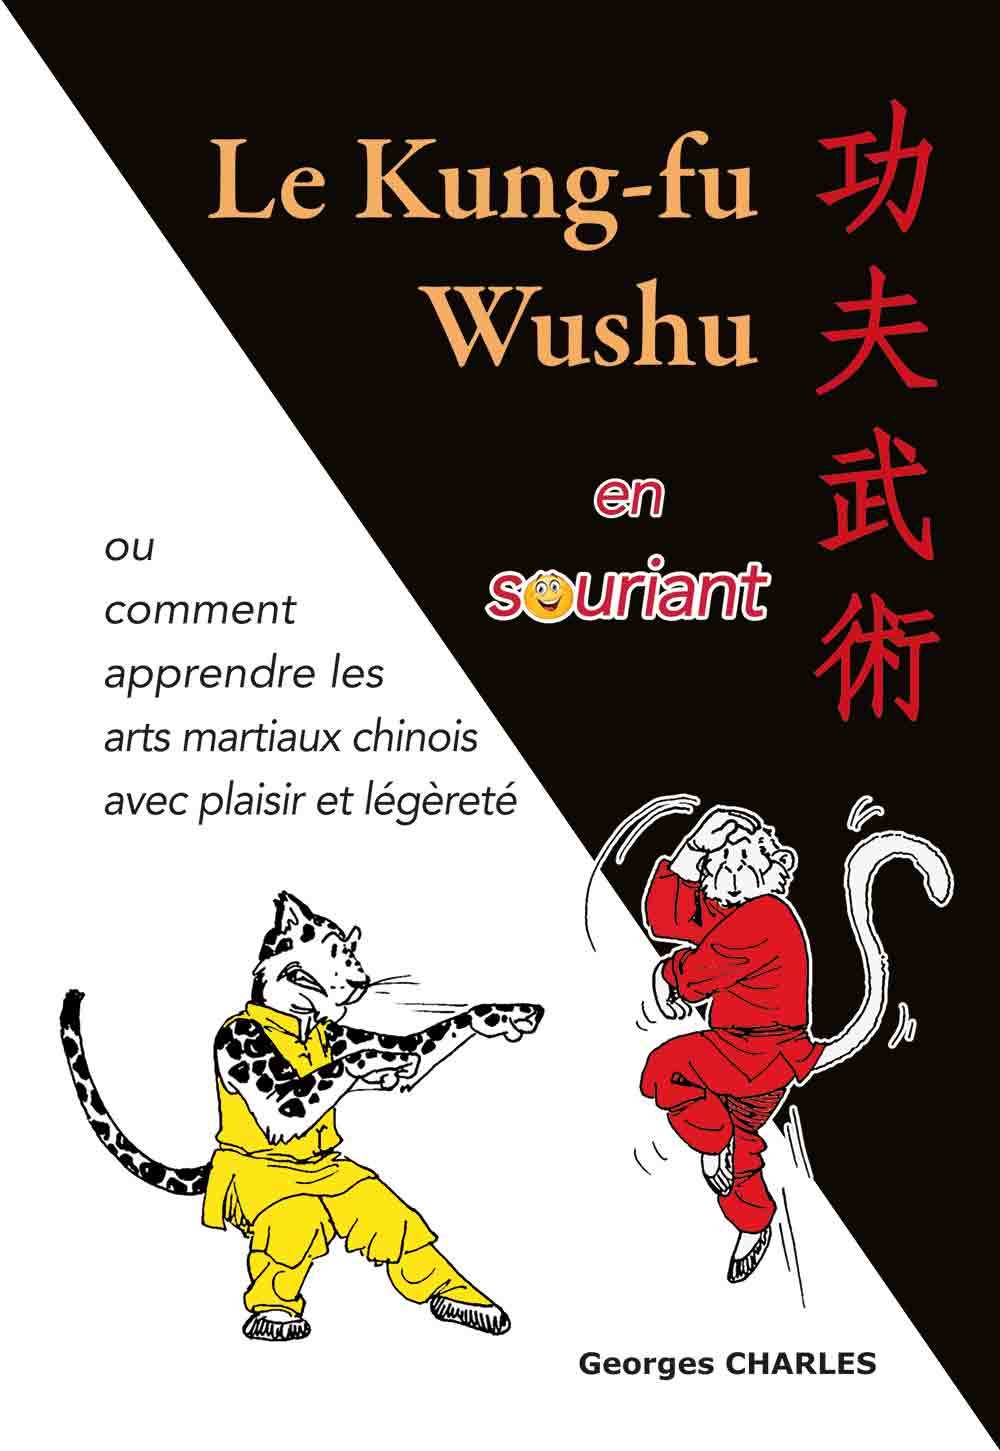 Könyv Le kung-fu wushu en souriant CHARLES